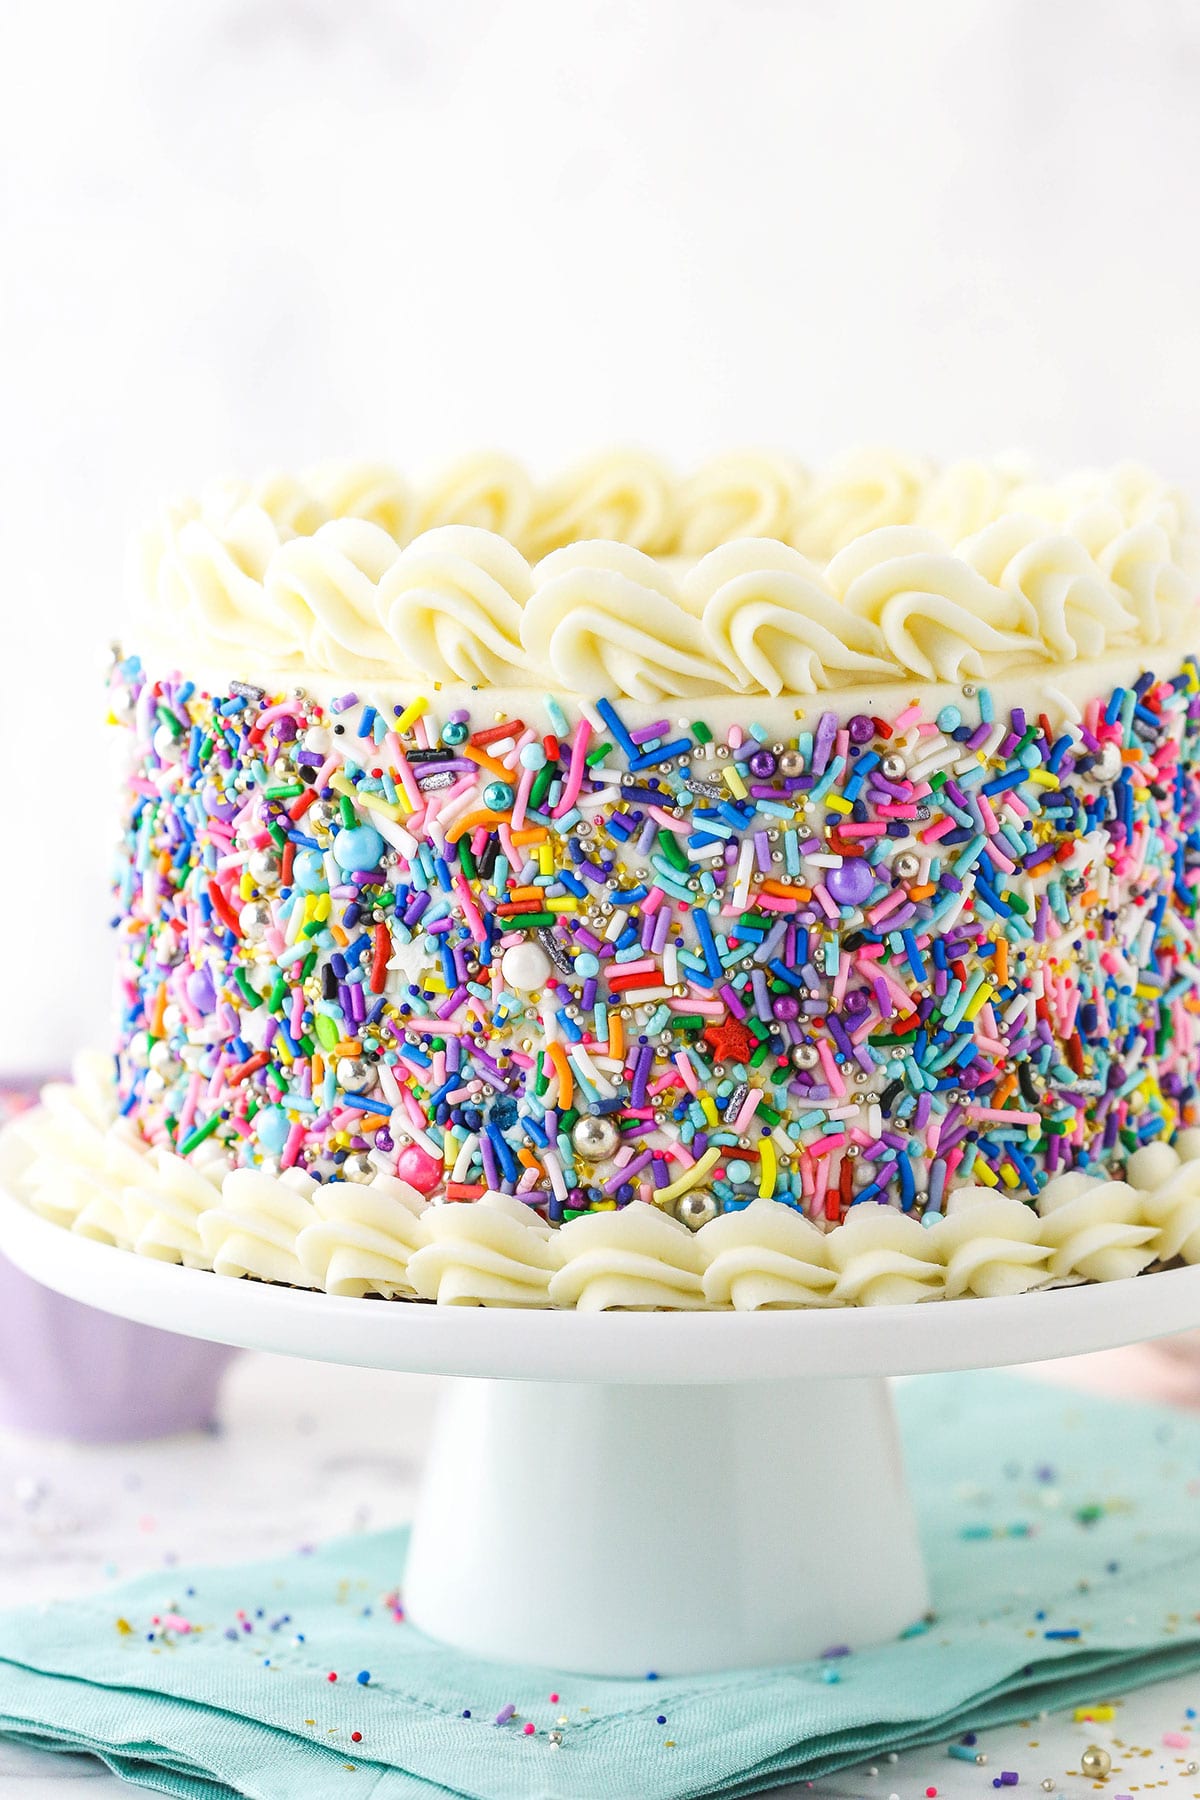 6 inch vanilla cake on white cake stand